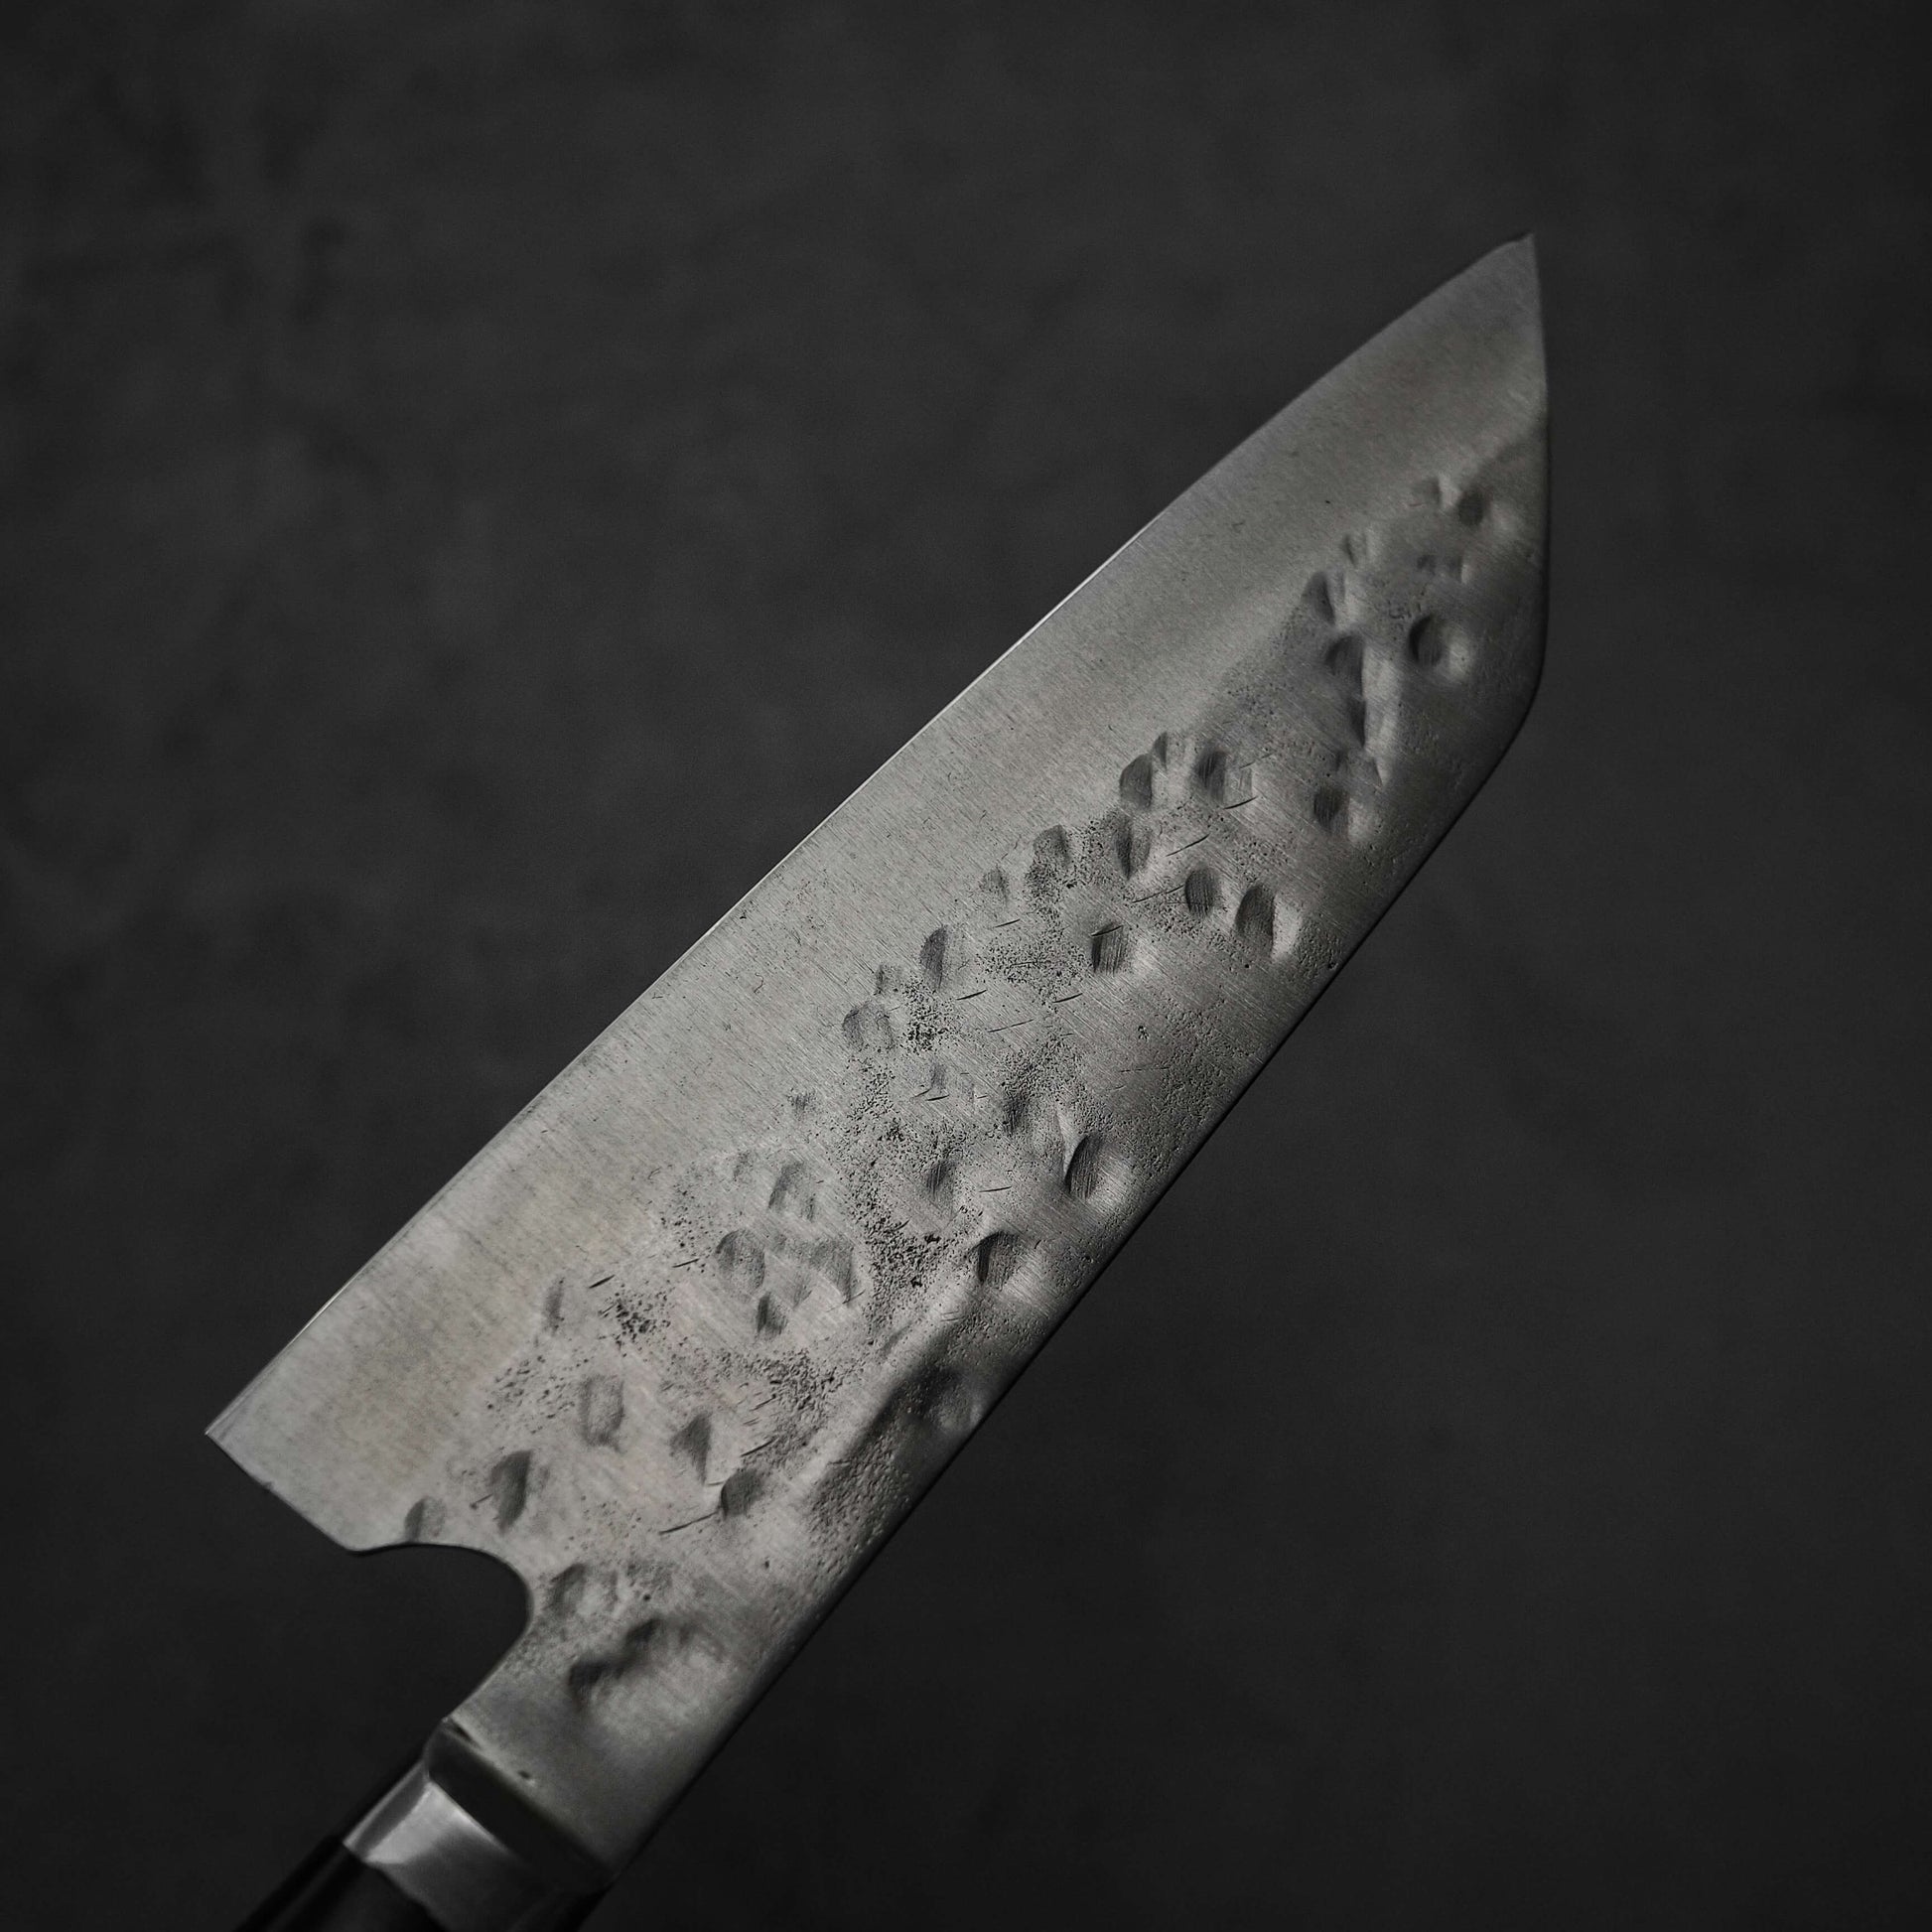 Teruyasu Fujiwara Maboroshi shirogami#1 santoku 180mm - Zahocho Japanese Knives